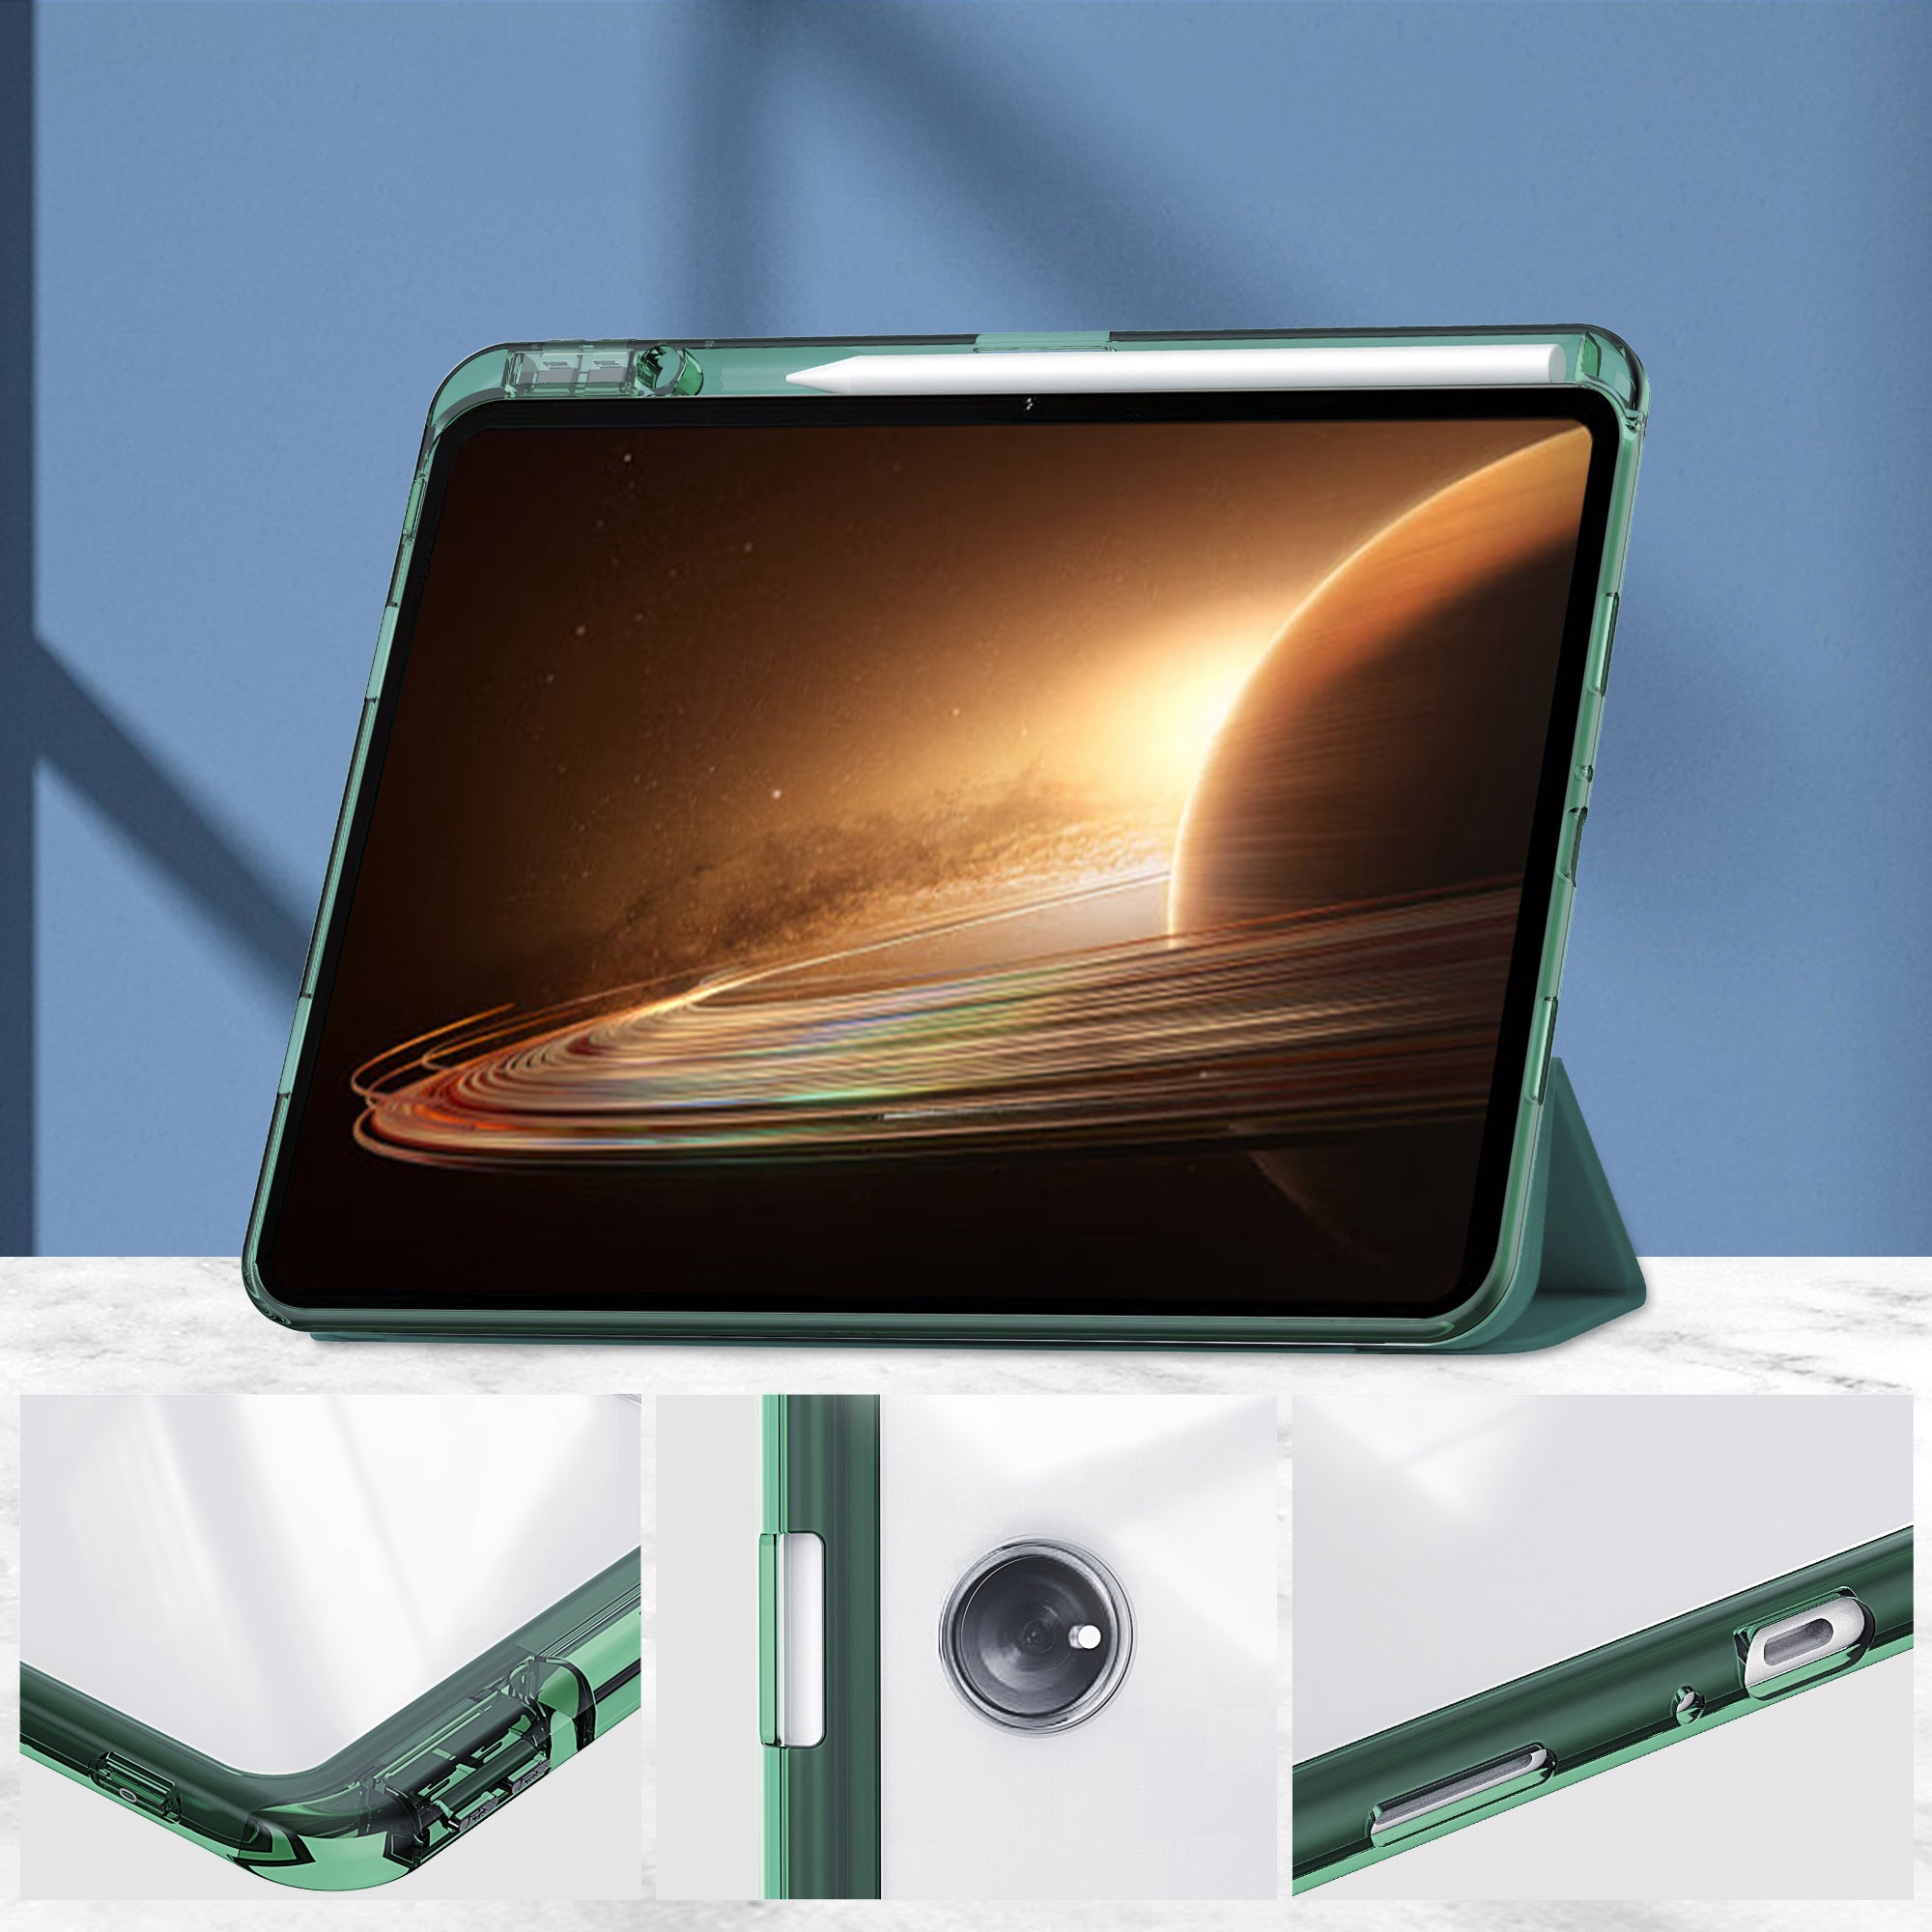 Schutzhülle Bizon Case Tab Clear Satin für Oppo Pad 2 / OnePlus Pad, Dunkelgrün